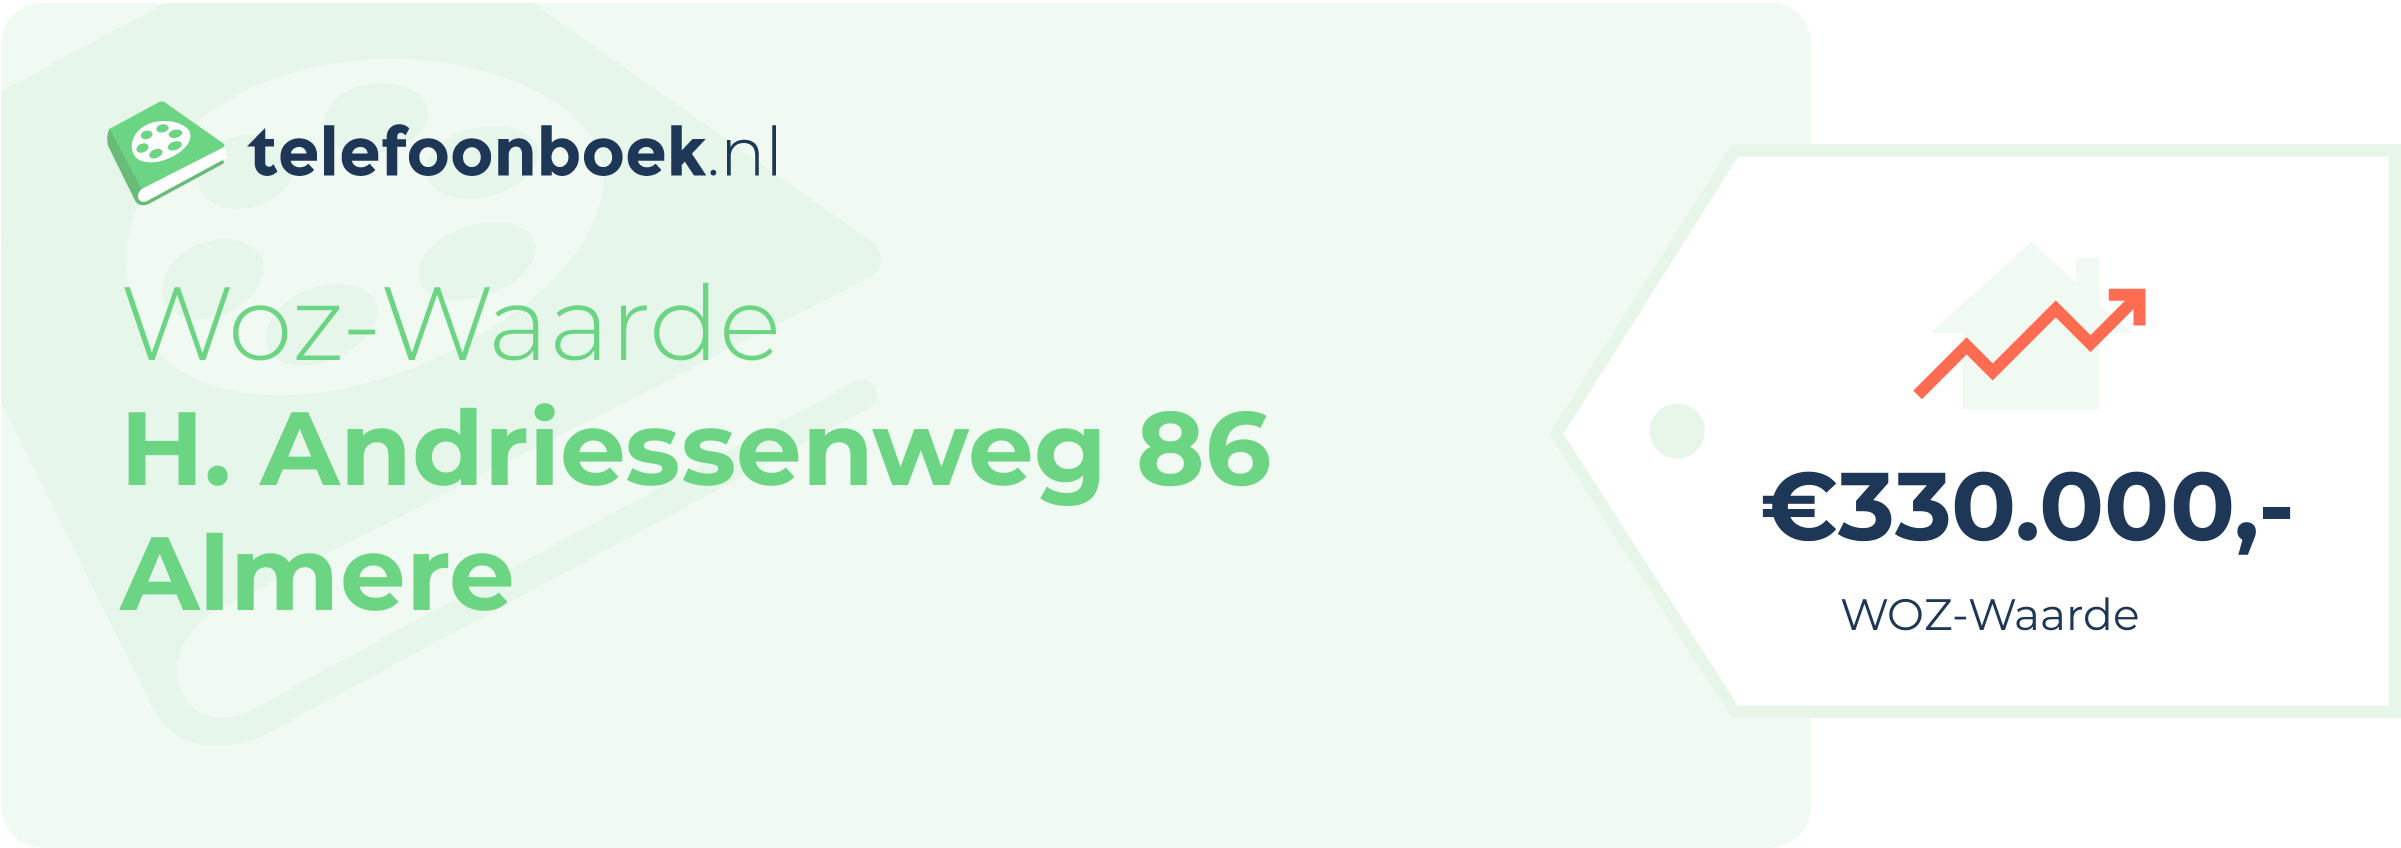 WOZ-waarde H. Andriessenweg 86 Almere